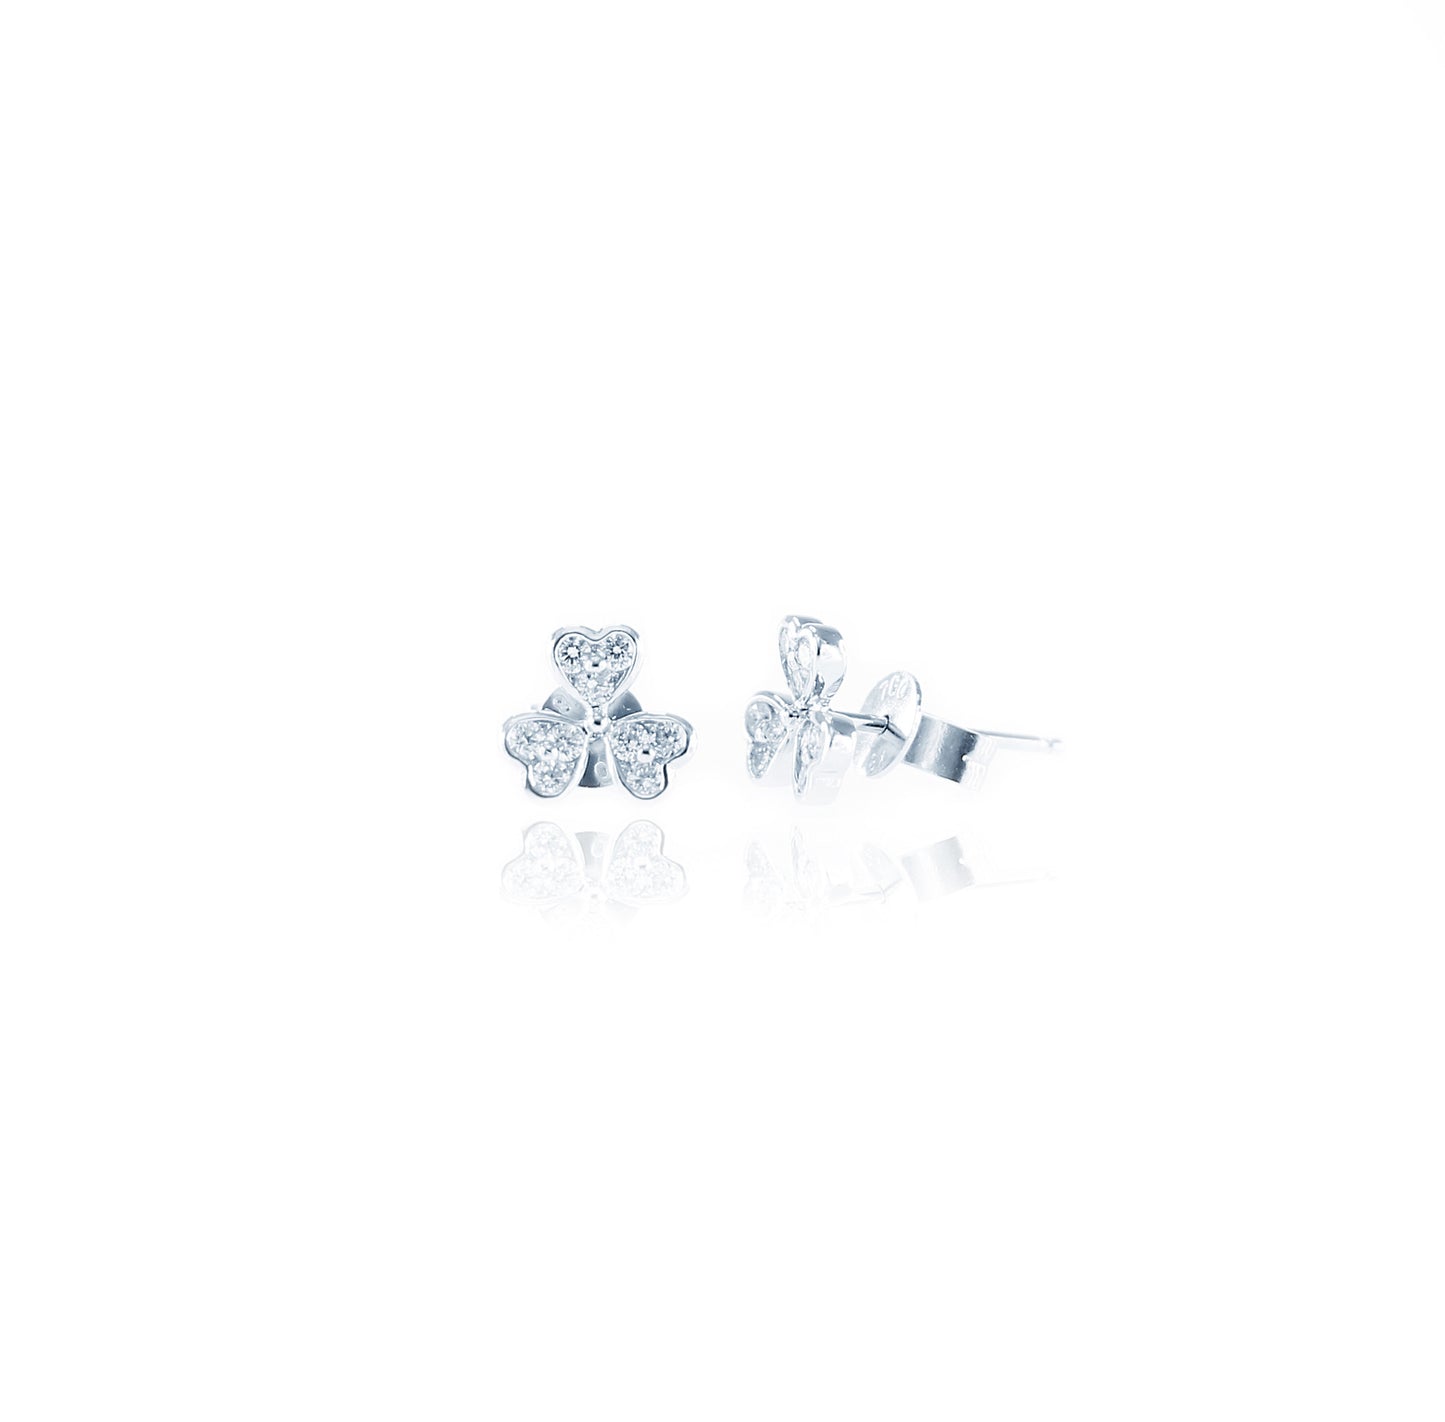 Linked Hearty Diamond Earrings in 18K White Gold